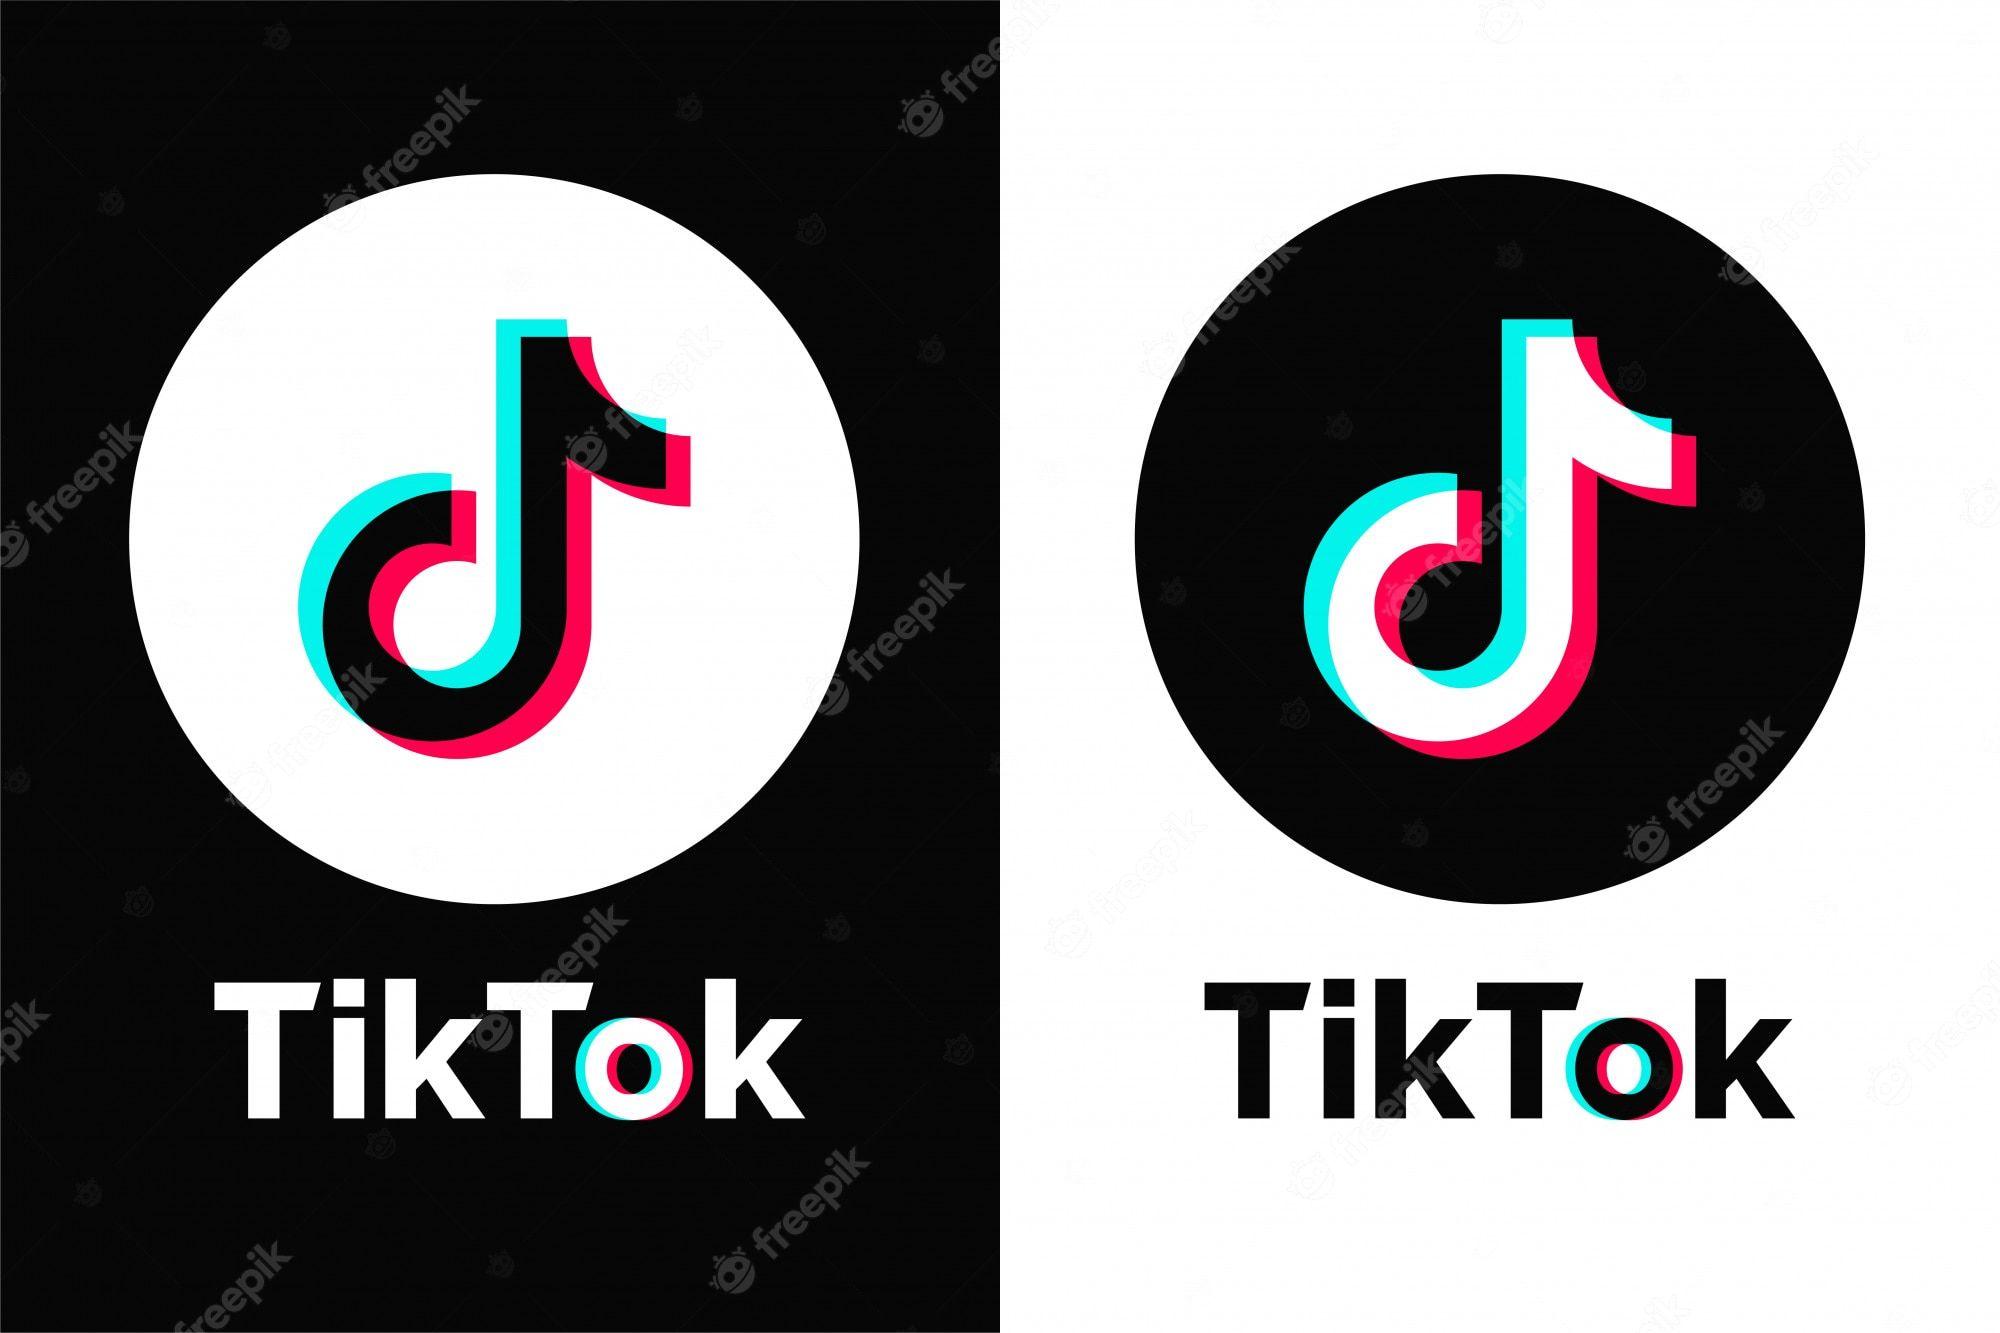 TikTok Logo - Tiktok Images - Free Download on Freepik